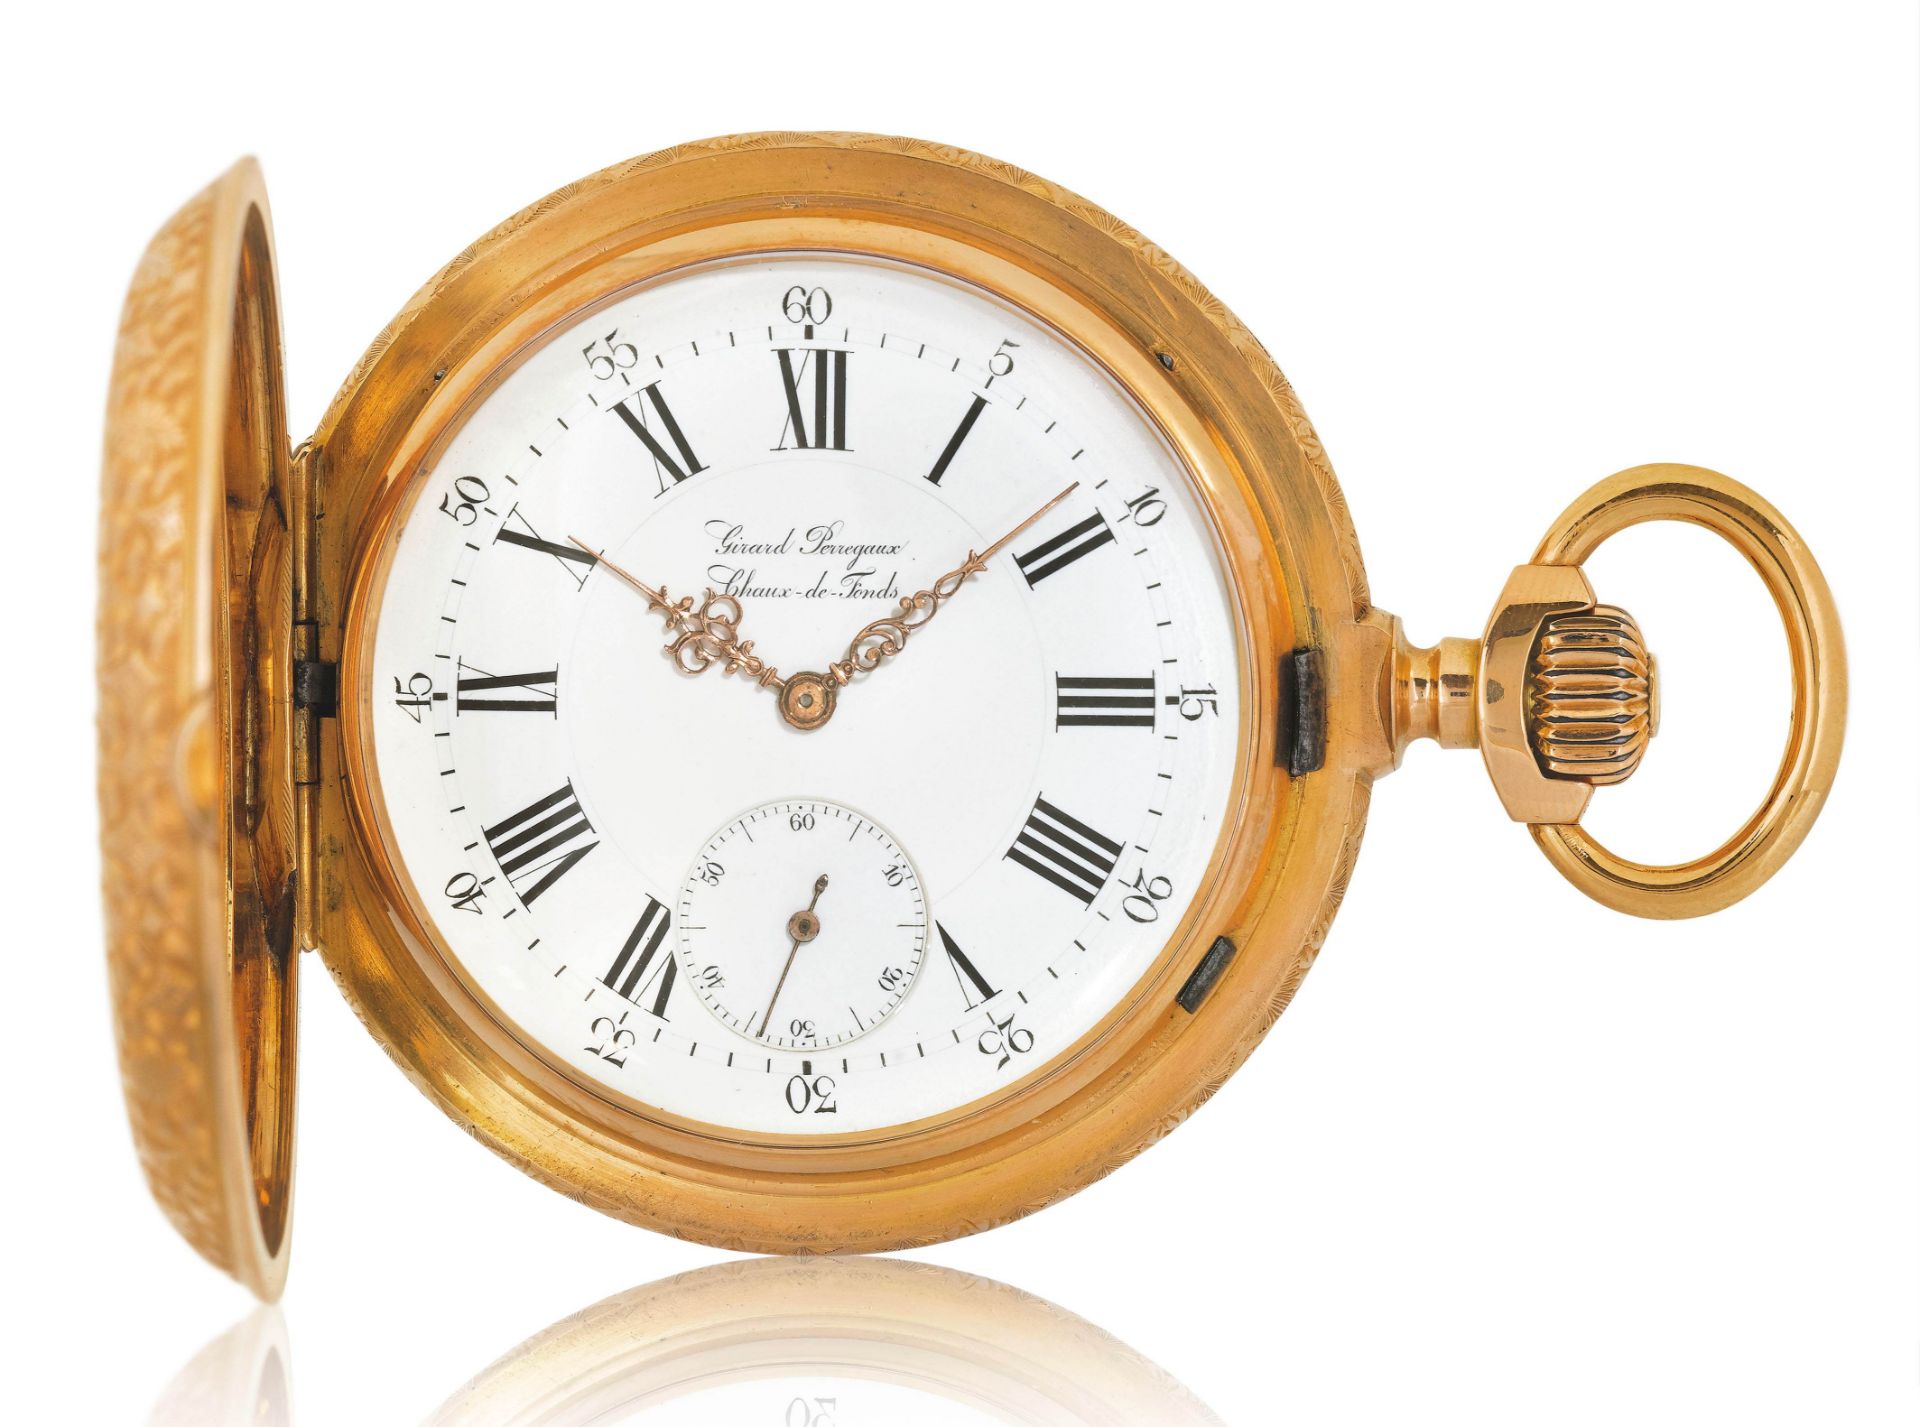 Girard Perregaux, schwerer und seltener Taschen-Chronometer, ca. 1880.